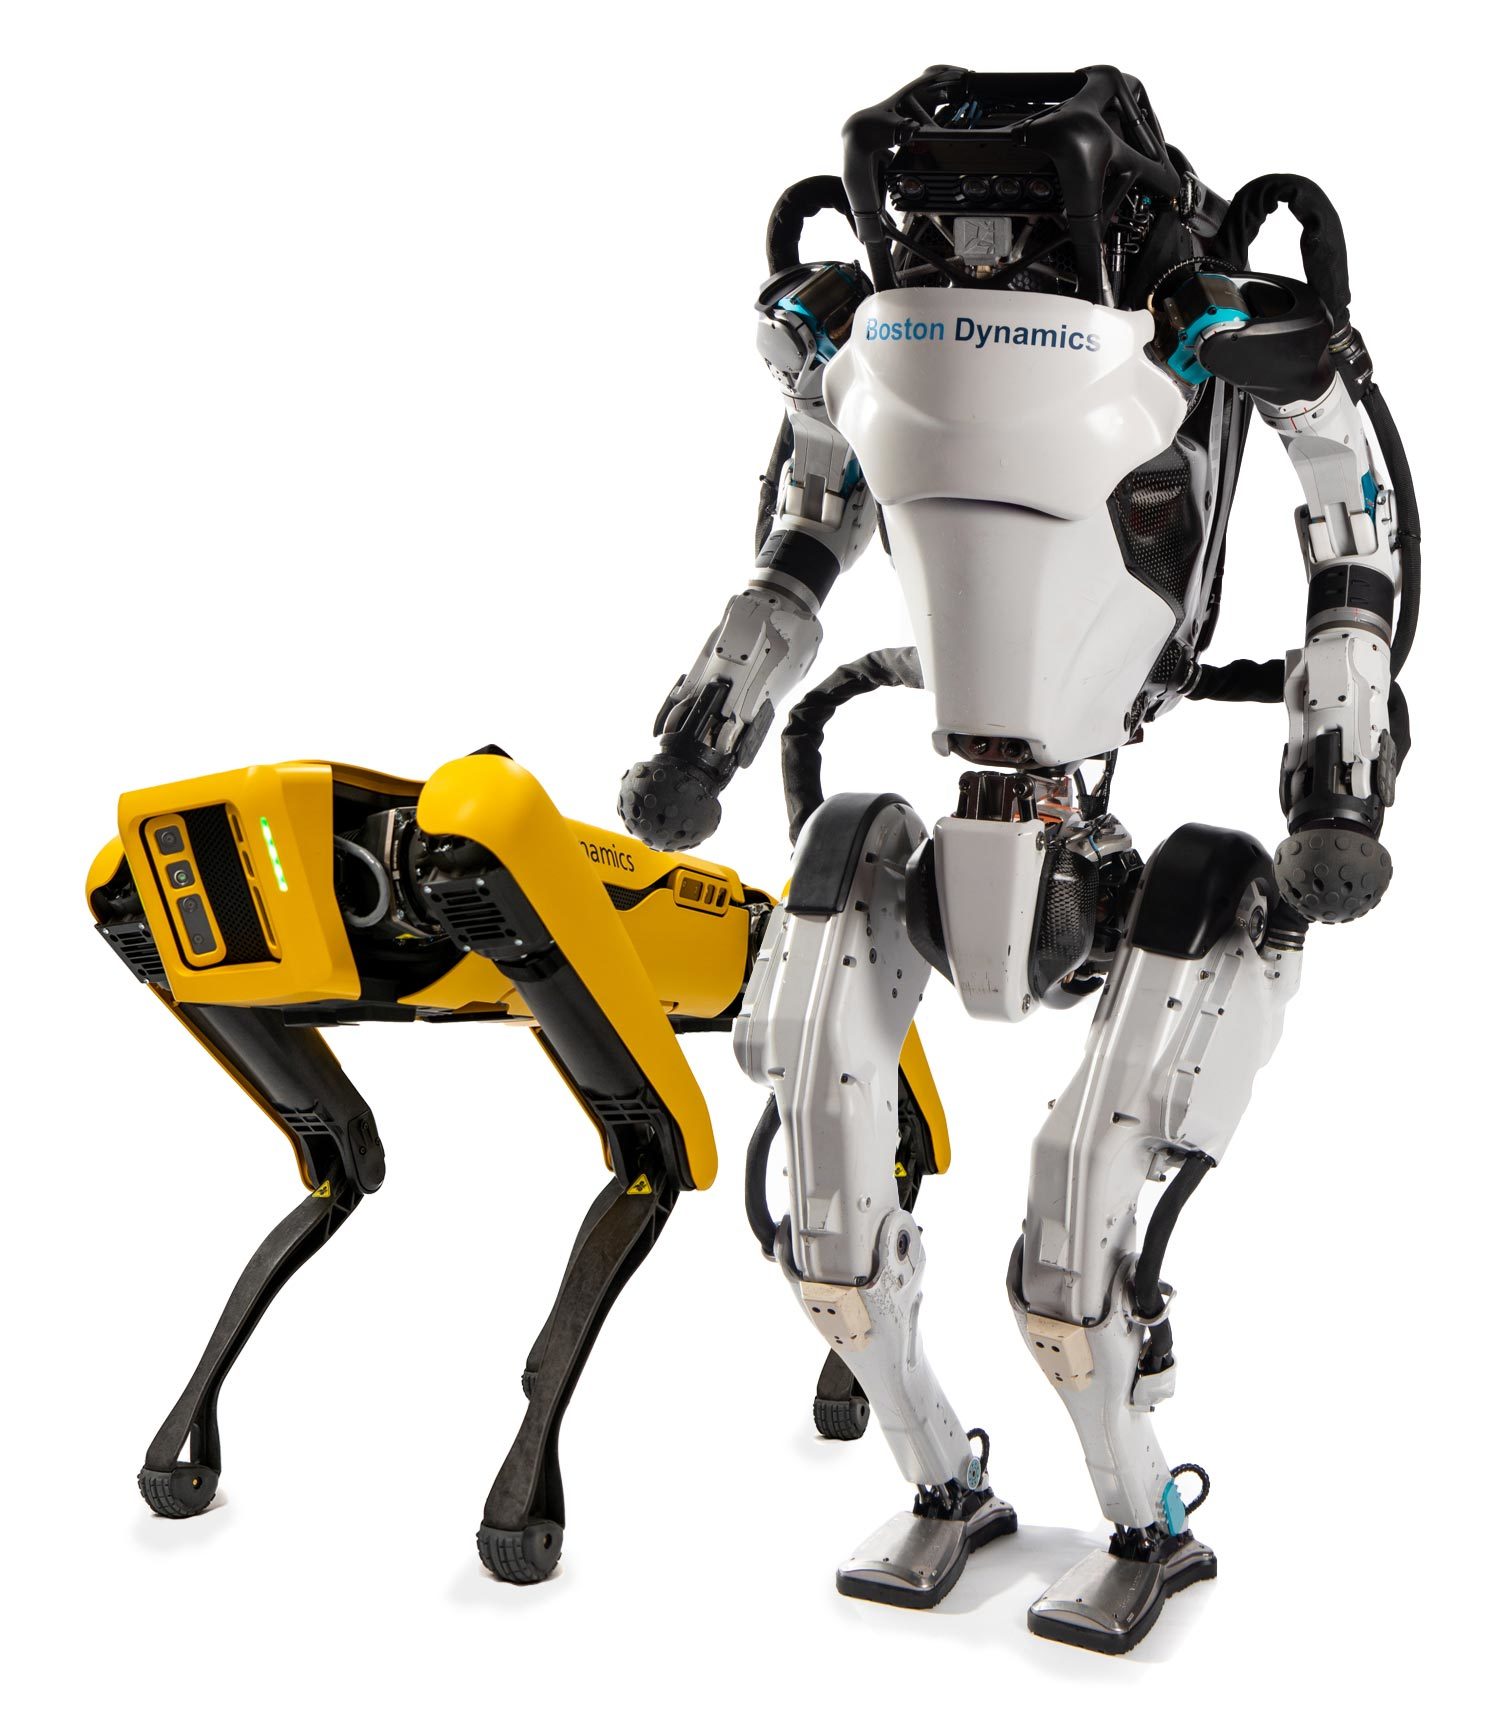 ヒュンダイがボストンダイナミクスを買収 サービスから物流までロボット事業強化 製造マネジメントニュース Monoist